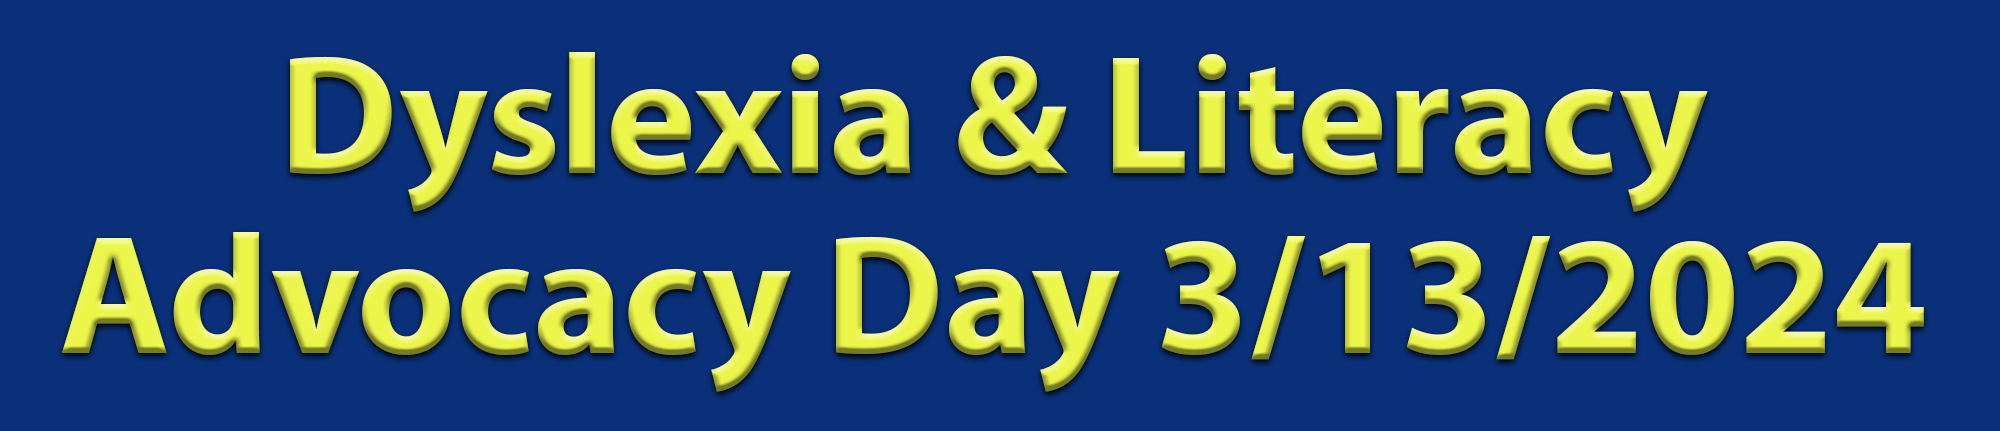 Dyslexia & Literacy Advocacy Day 3/13/2024